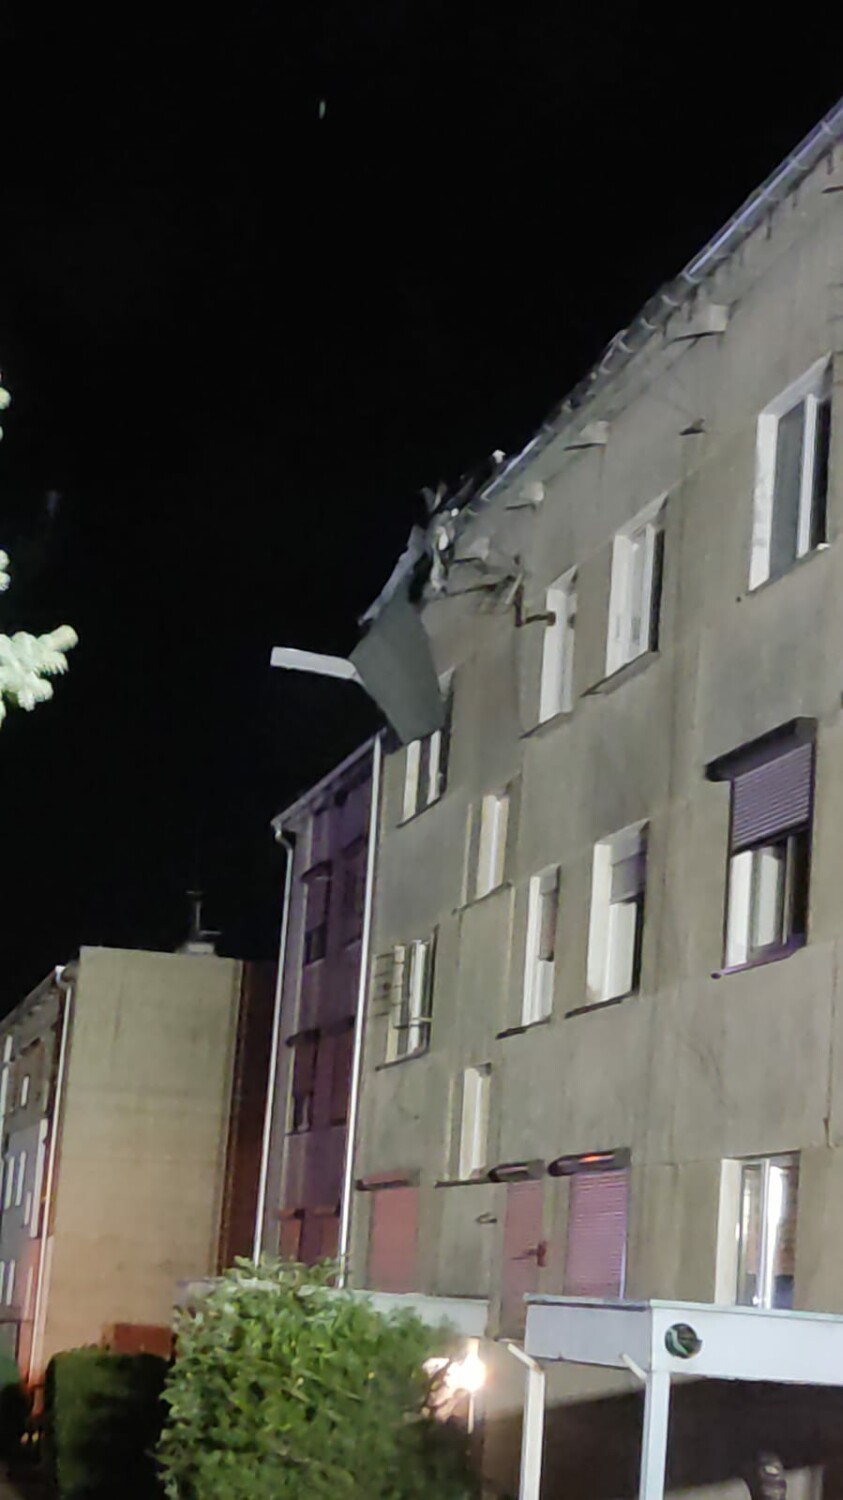 Wichury w naszym powiecie. Wiatr zerwał fragment dachu z bloku w Brodach